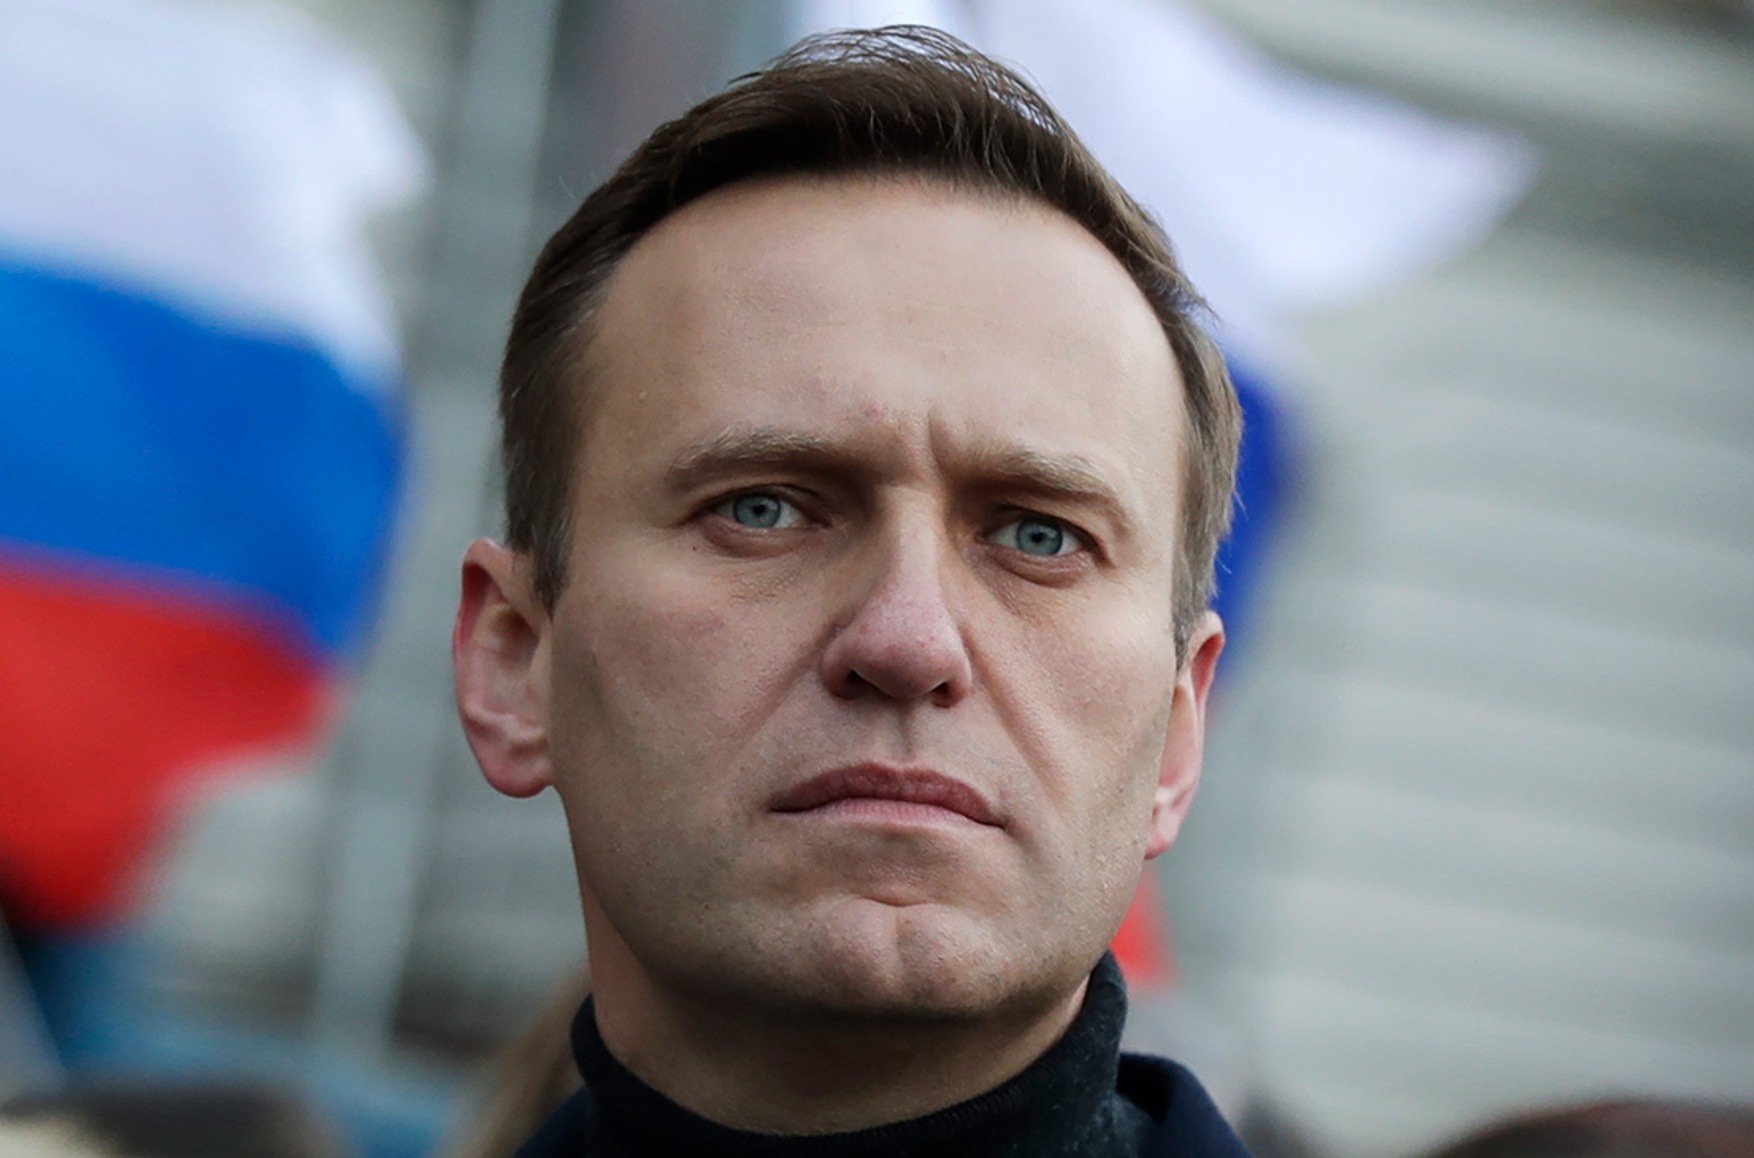 Псковські депутати вимагають порушити кримінальну справу про замах на Навального. Раніше з такою вимогою виступили депутати Петербурга